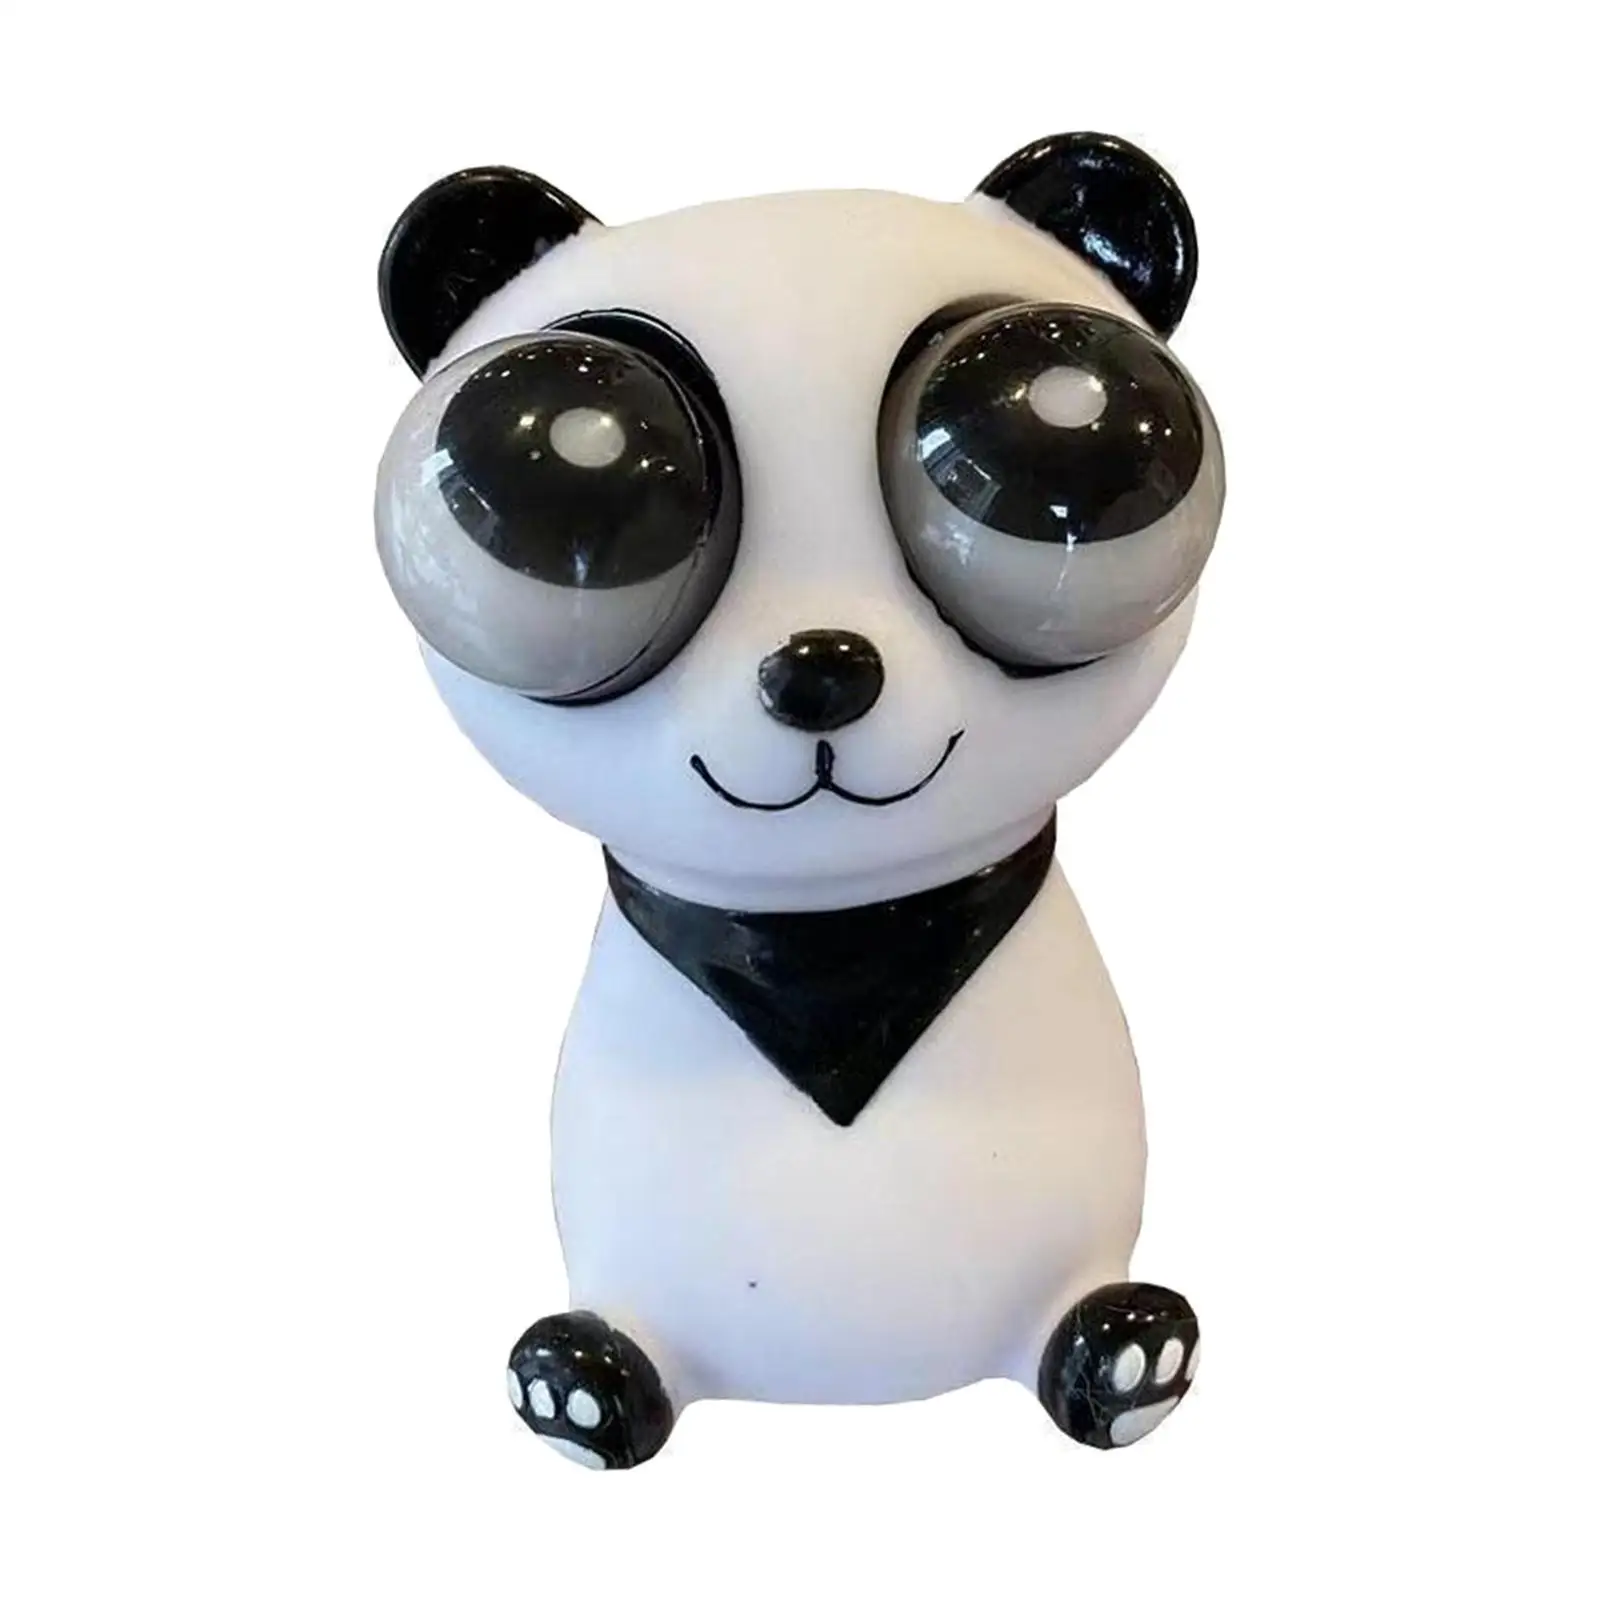 

Мультяшные большие глаза, игрушка панда для корзины, наполнитель, праздничные подарки, бриллианты